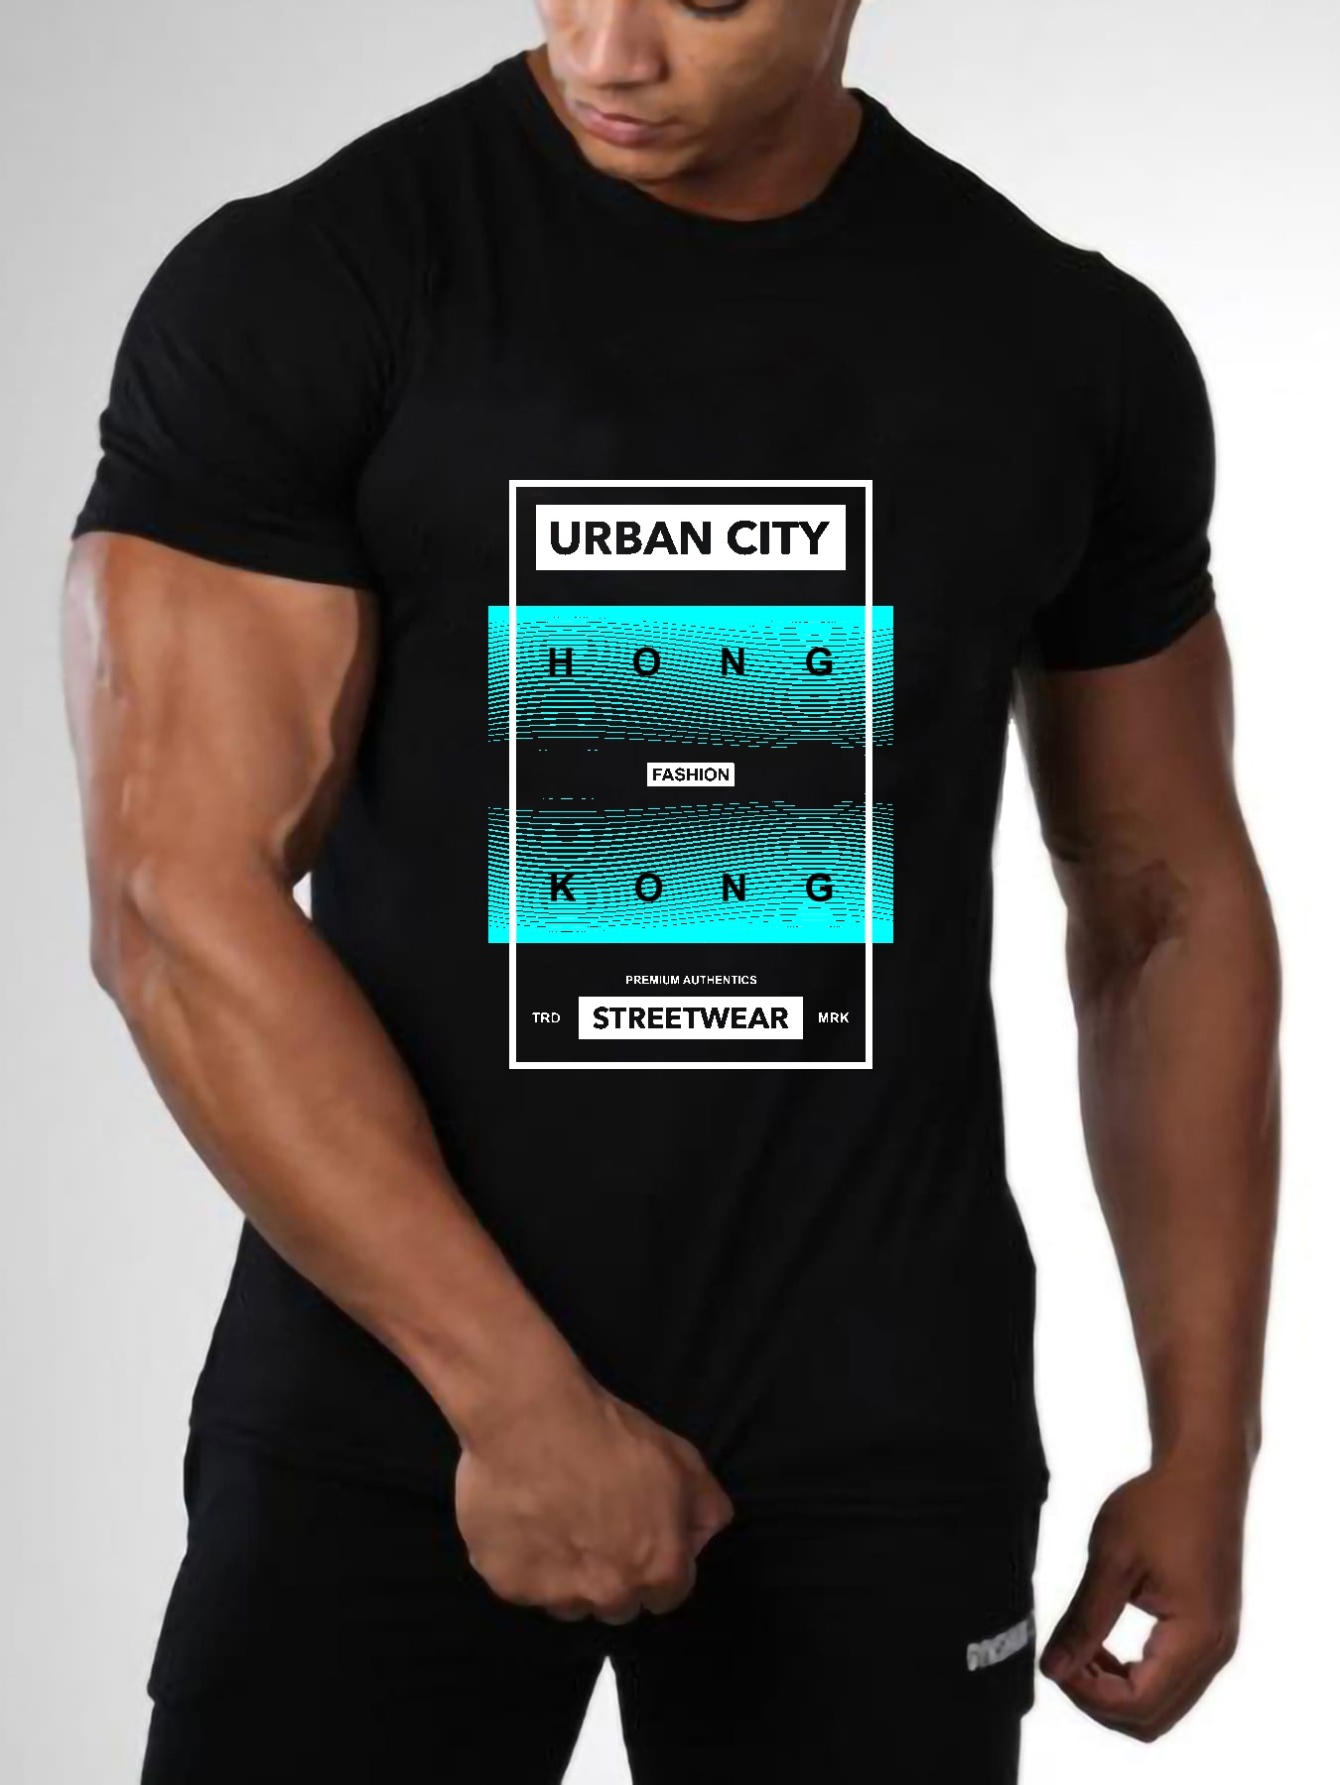 Streetwear Urban Fashion Tshirt Unisex Short Sleeves Shirt Graphic